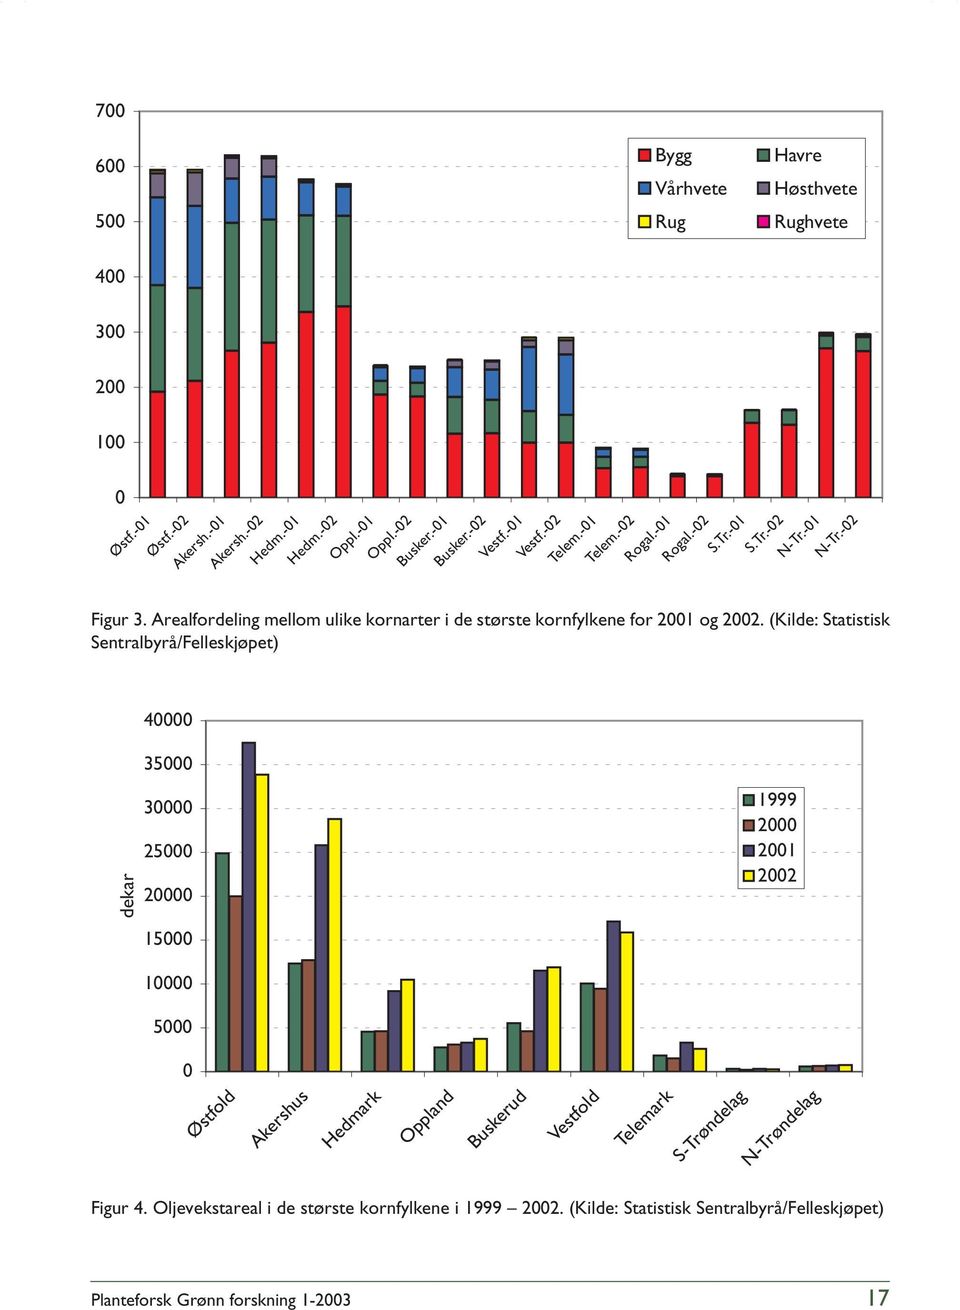 Arealfordeling mellom ulike kornarter i de største kornfylkene for 2001 og 2002.